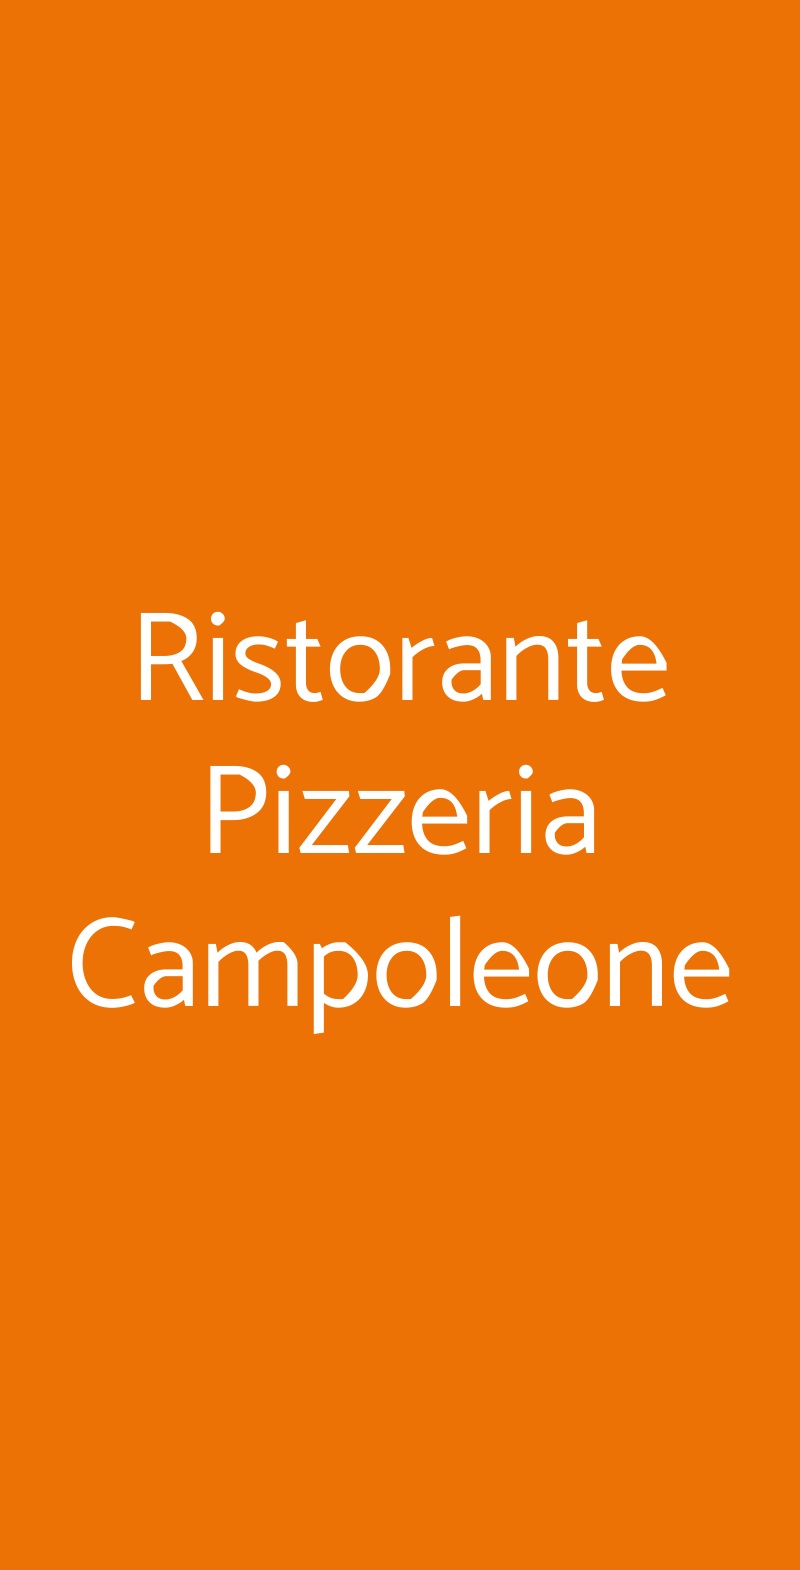 Ristorante Pizzeria Campoleone Lanuvio menù 1 pagina